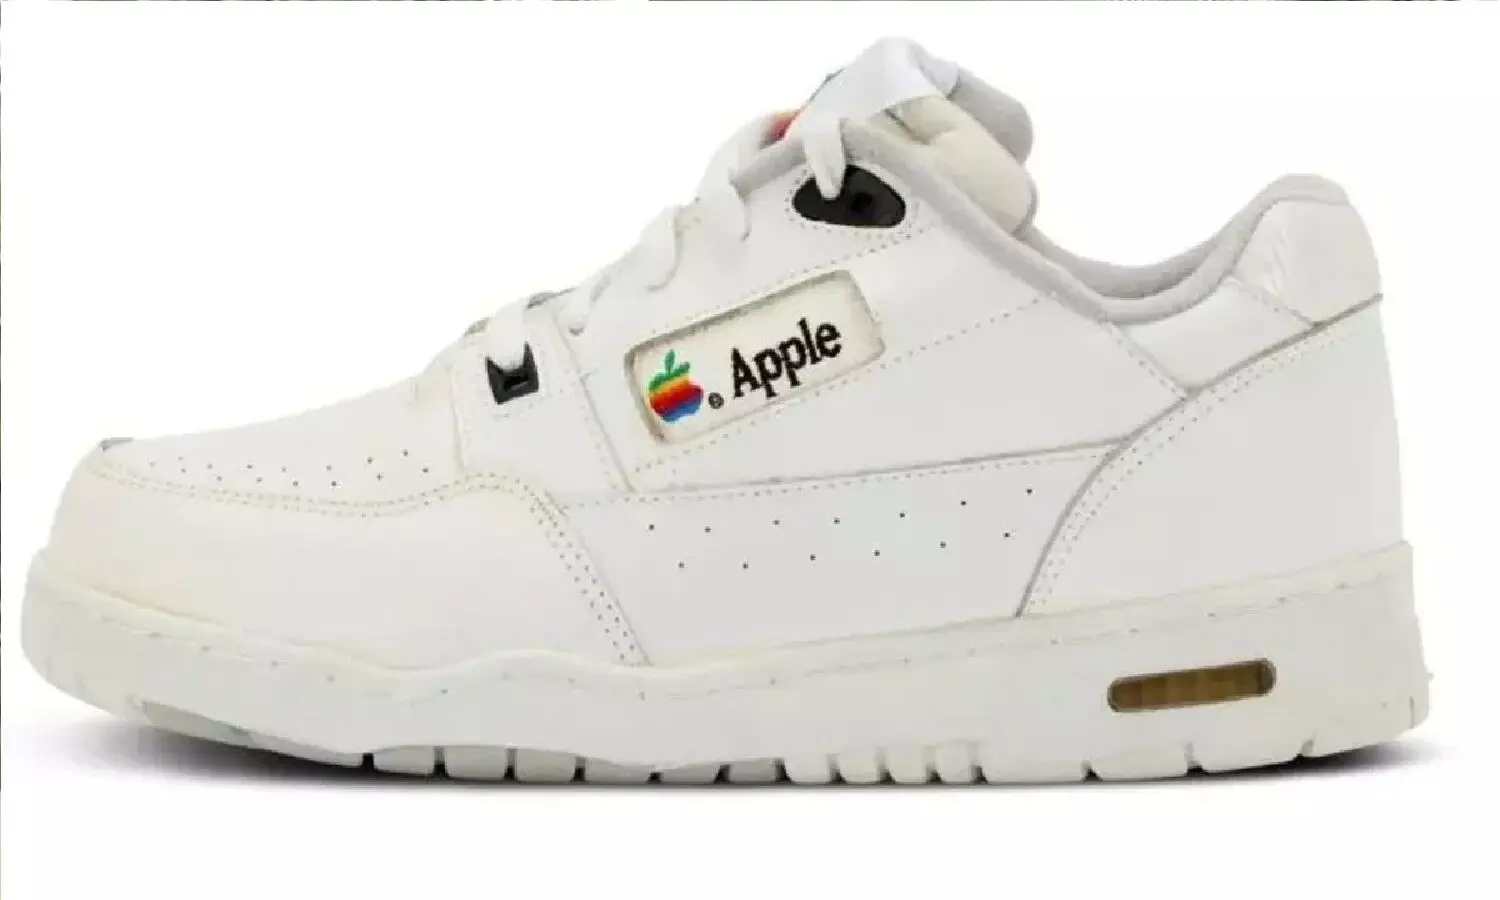 कभी जूते बनाती थी एप्पल, नीलाम हो रहे Apple Shoe की कीमत जानकर चकरा जाएंगे